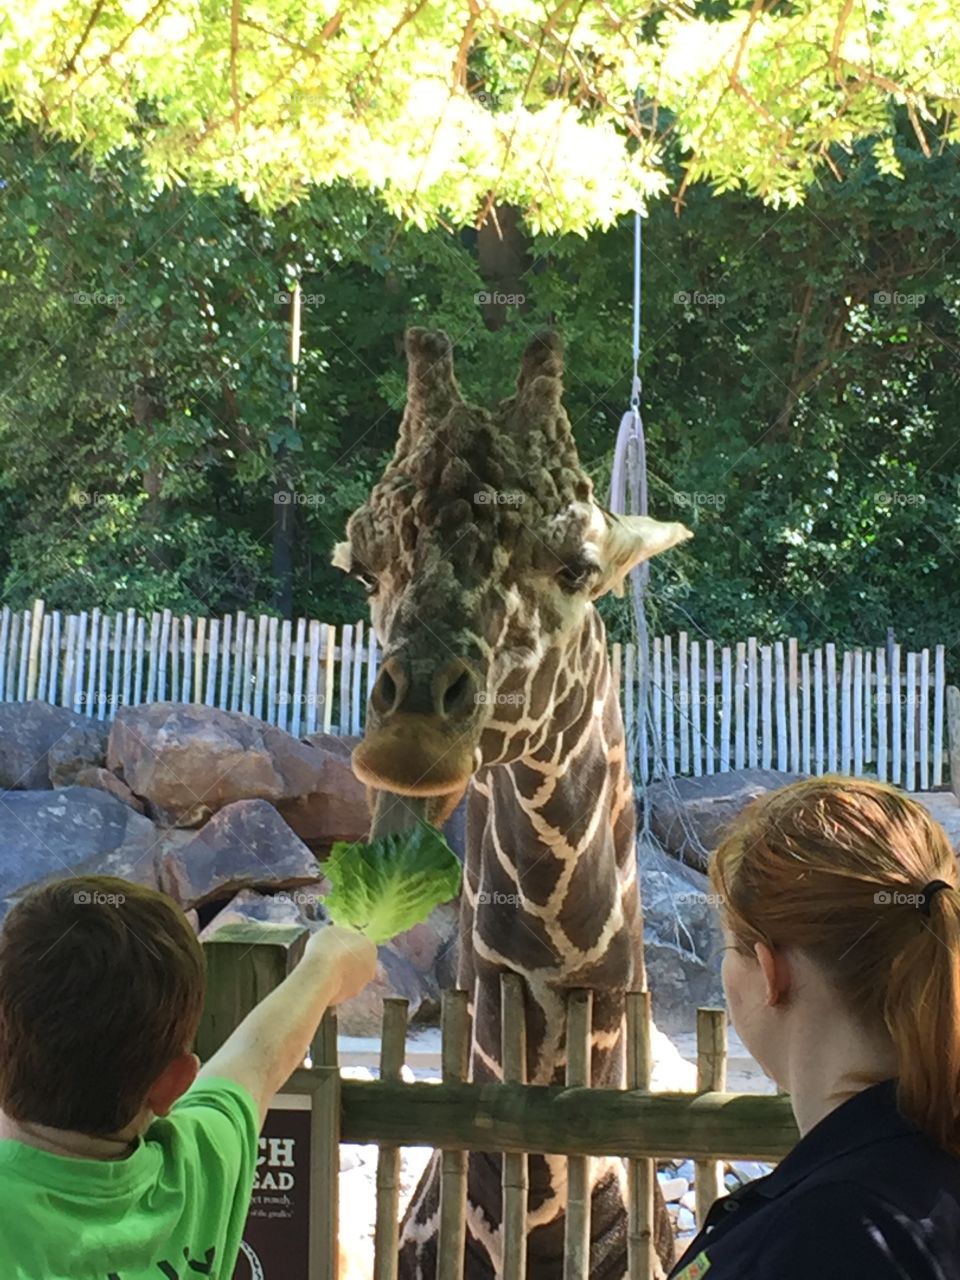 Giraffe feeding time - lettuce is the best!